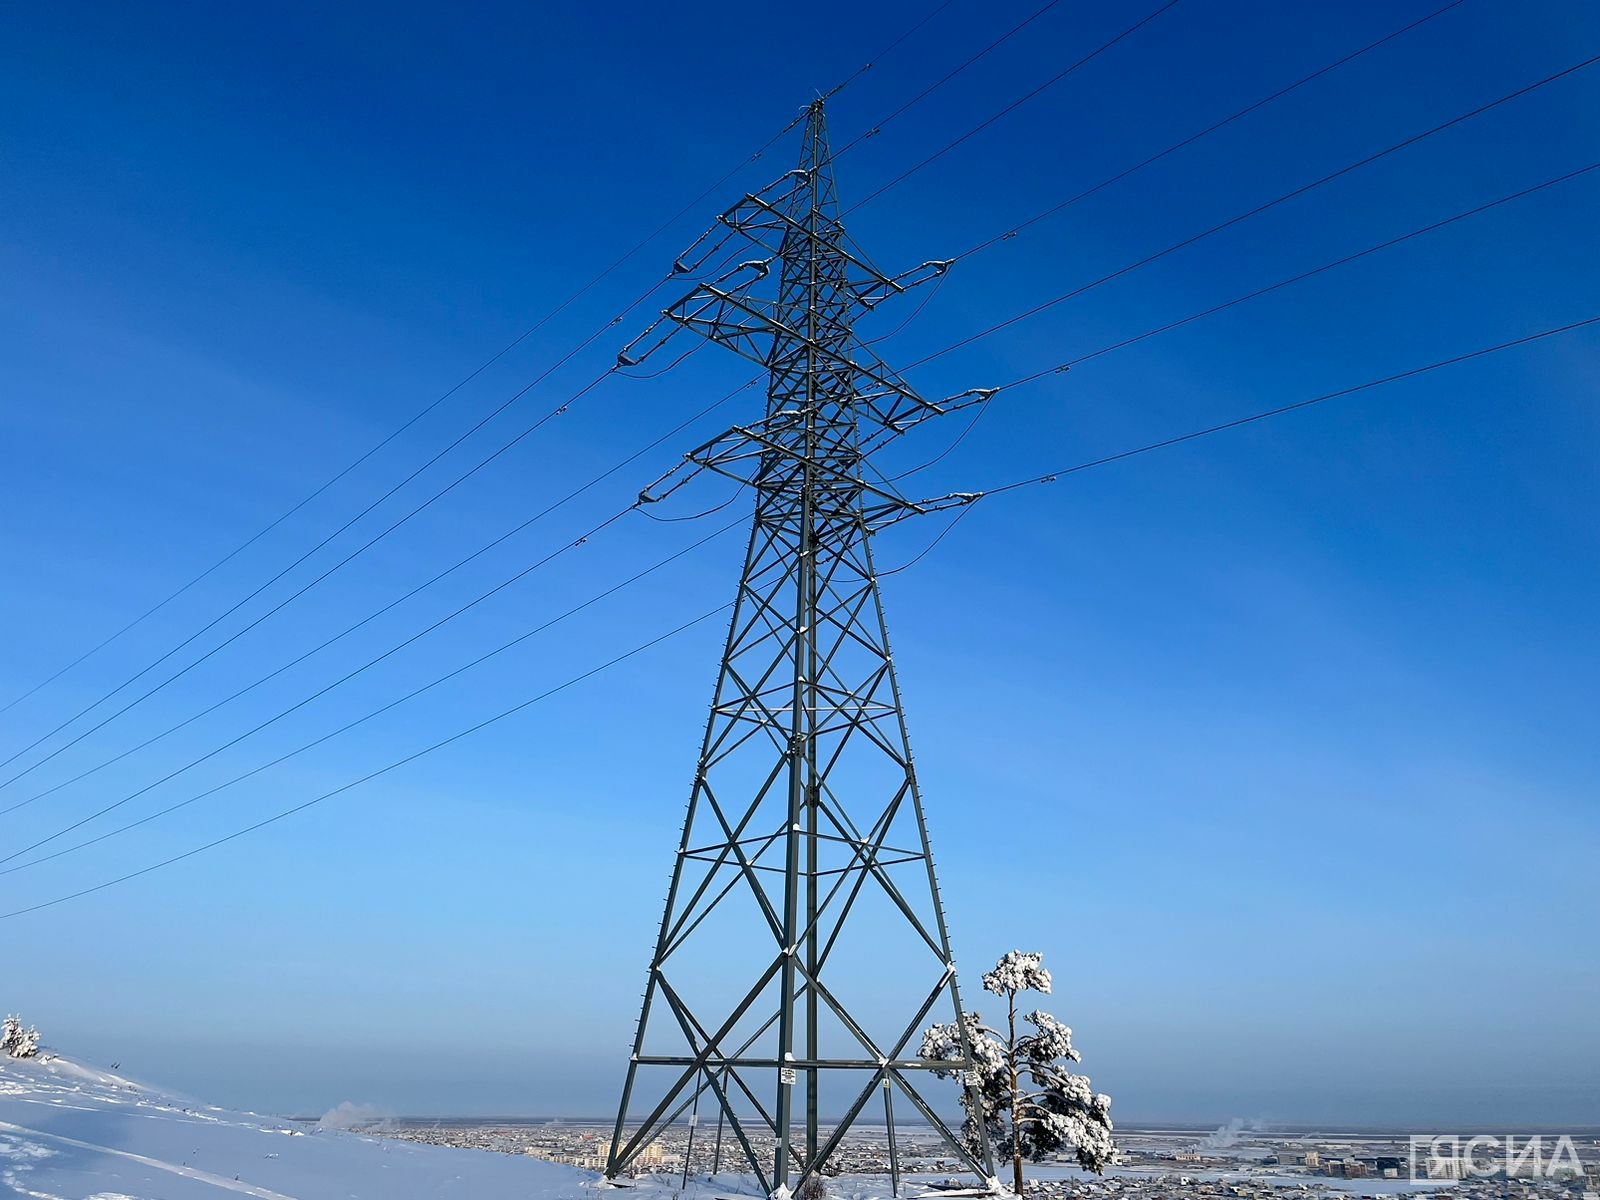 В Якутске и ряде районов временно ограничат электроснабжение с 20 февраля по 4 марта